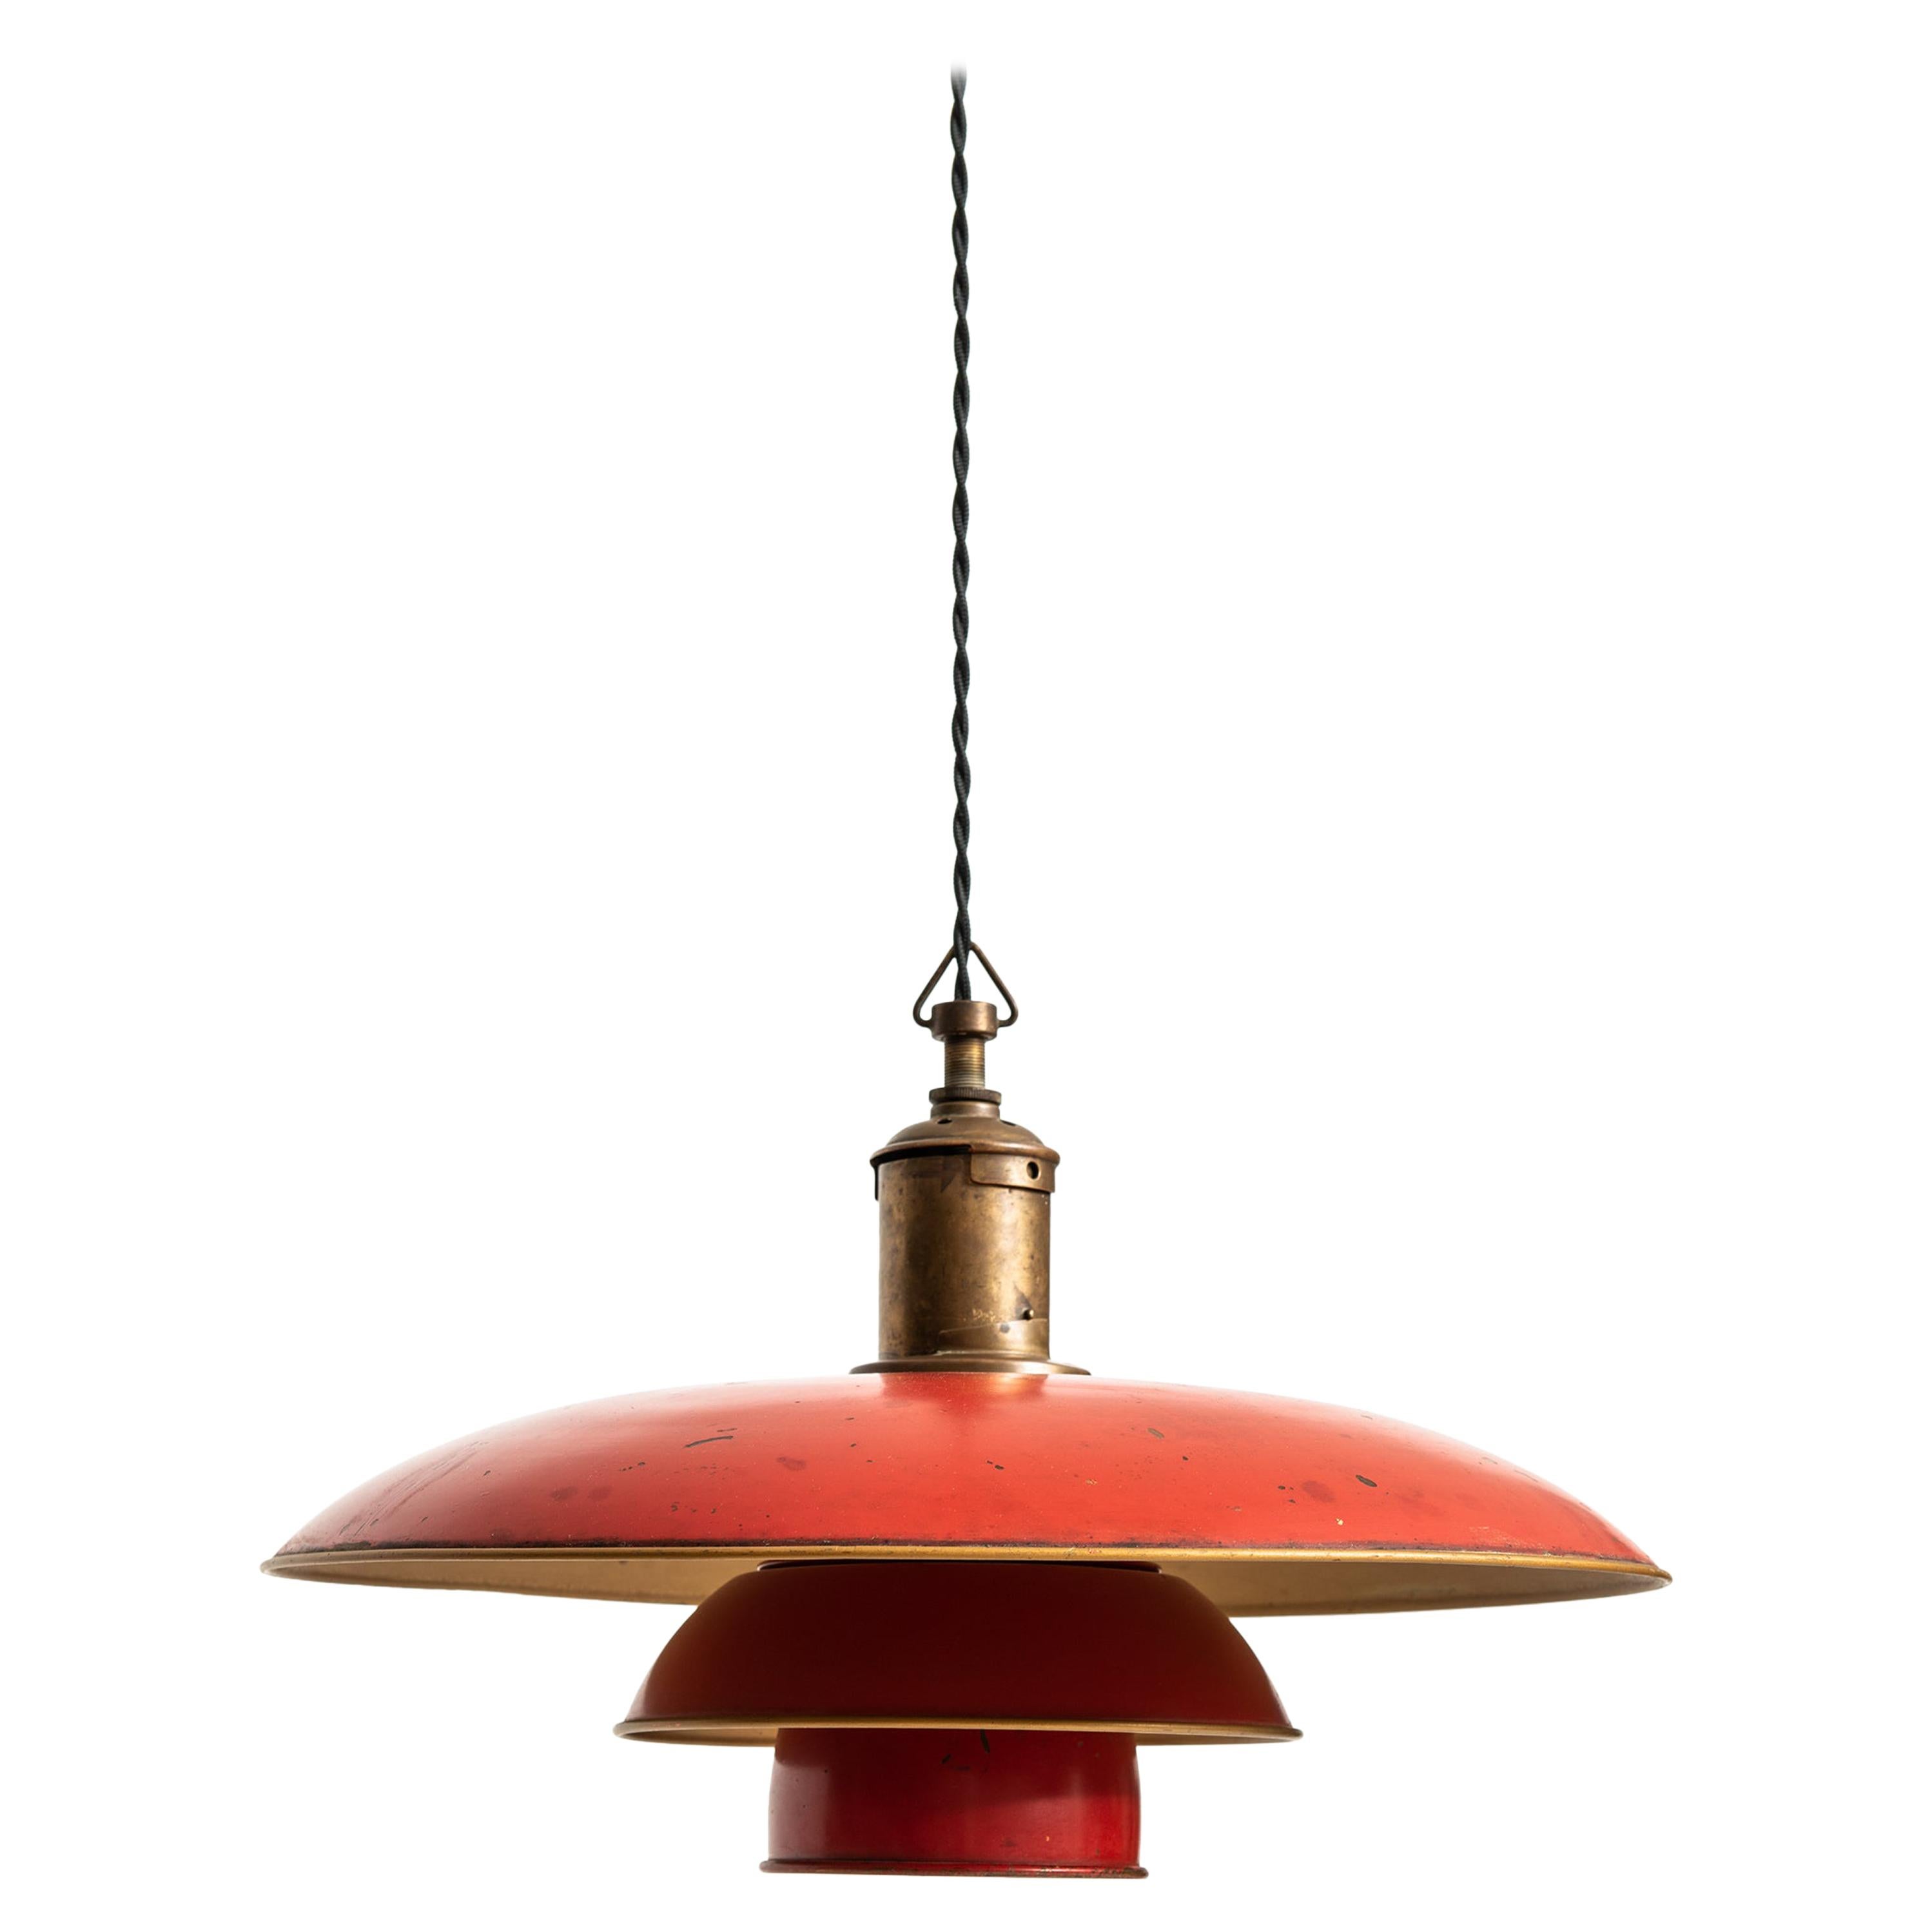 Poul Henningsen Early Ceiling Lamp Model PH-4/3 by Louis Poulsen in Denmark